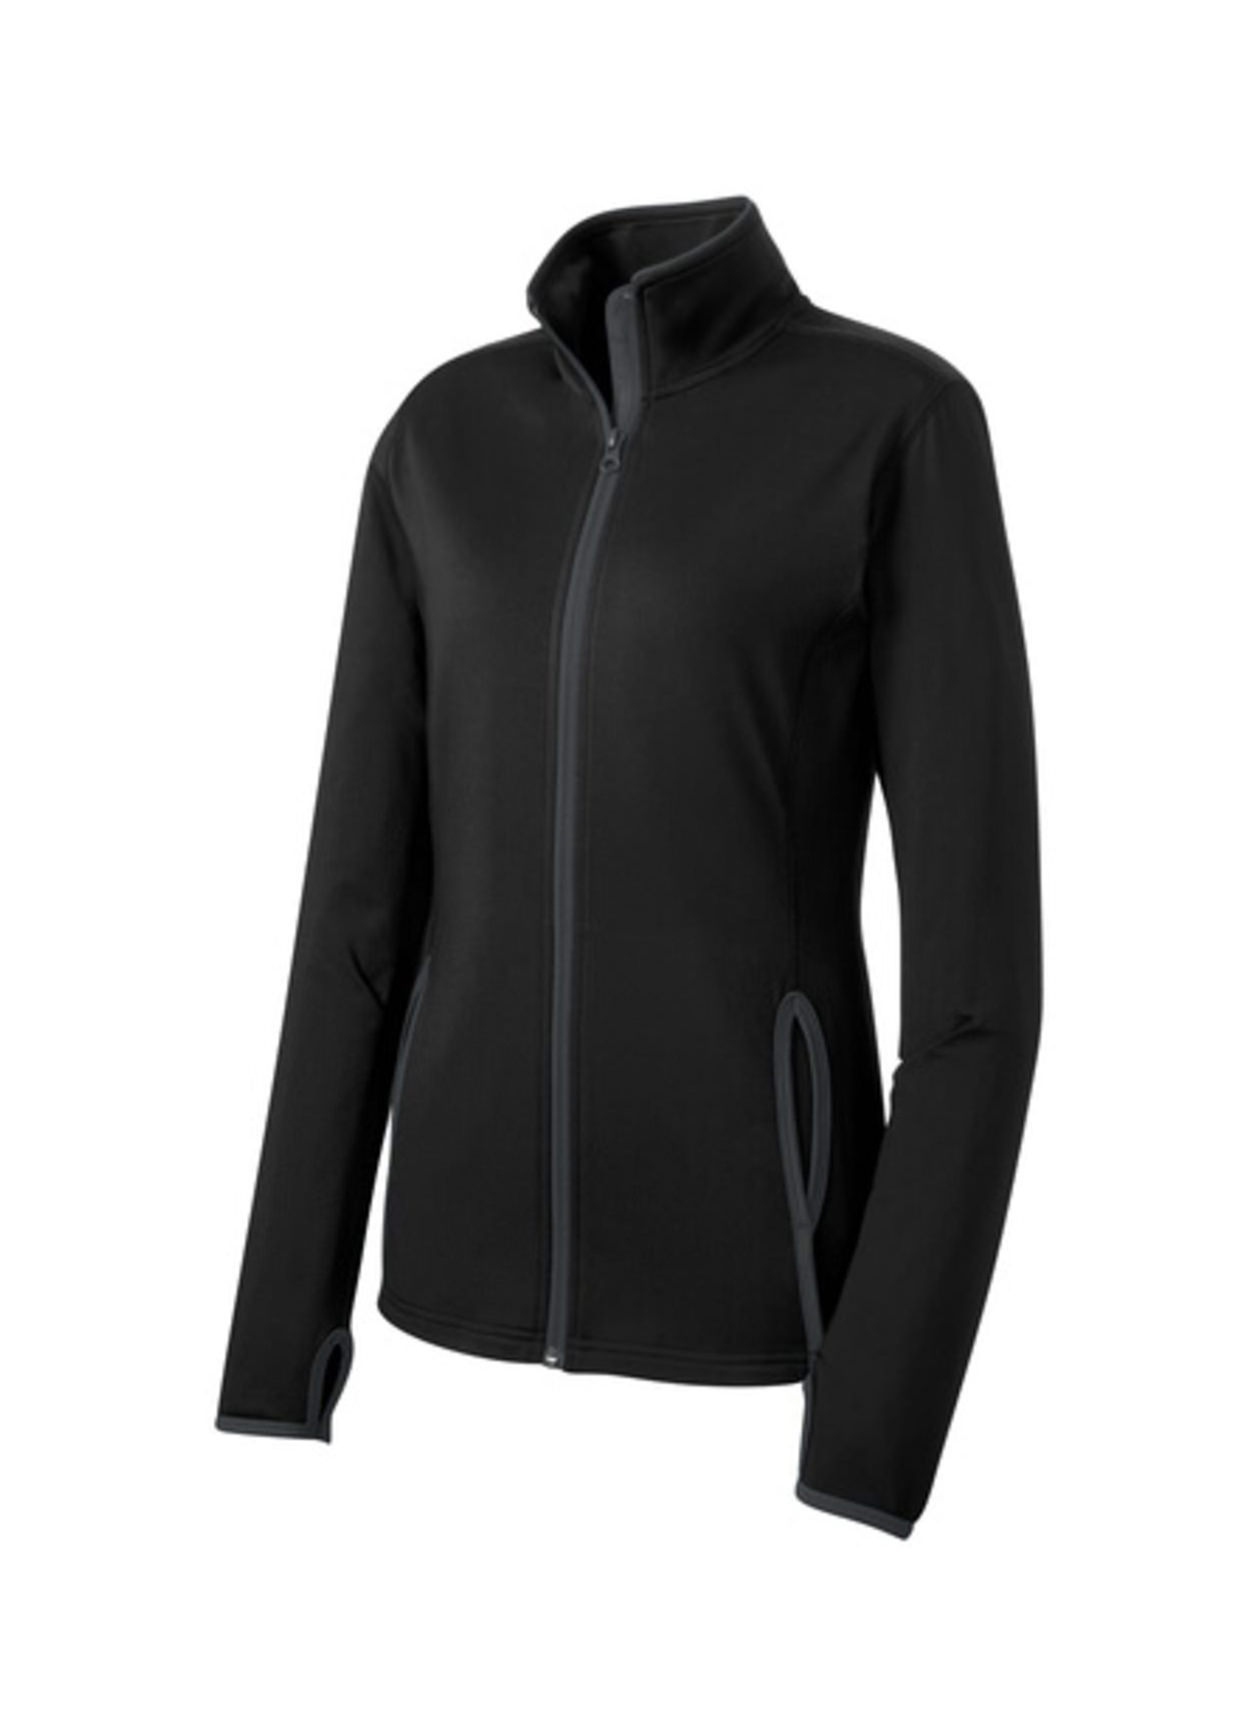 SPORT-TEK Women's Black / Charcoal Grey Sport-Wick Stretch Contrast Jacket